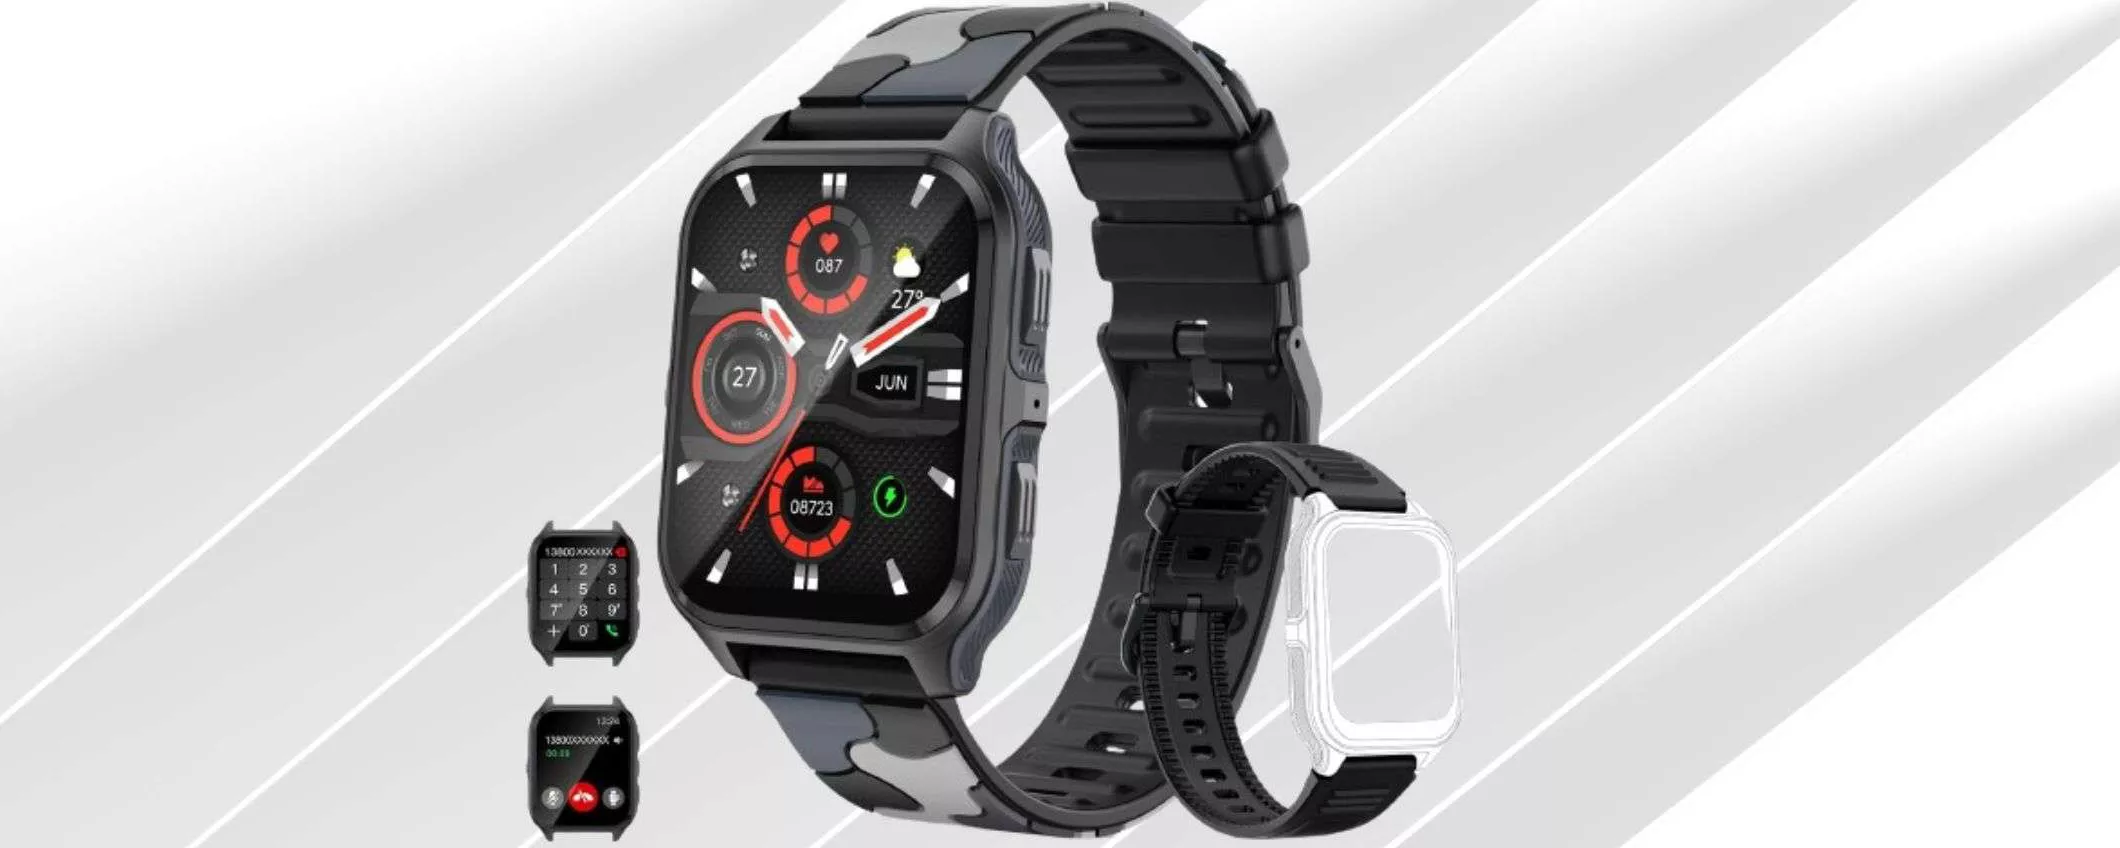 Amazon prezzi SHOCK: solo 17,99€ per questo smartwatch SPETTACOLARE